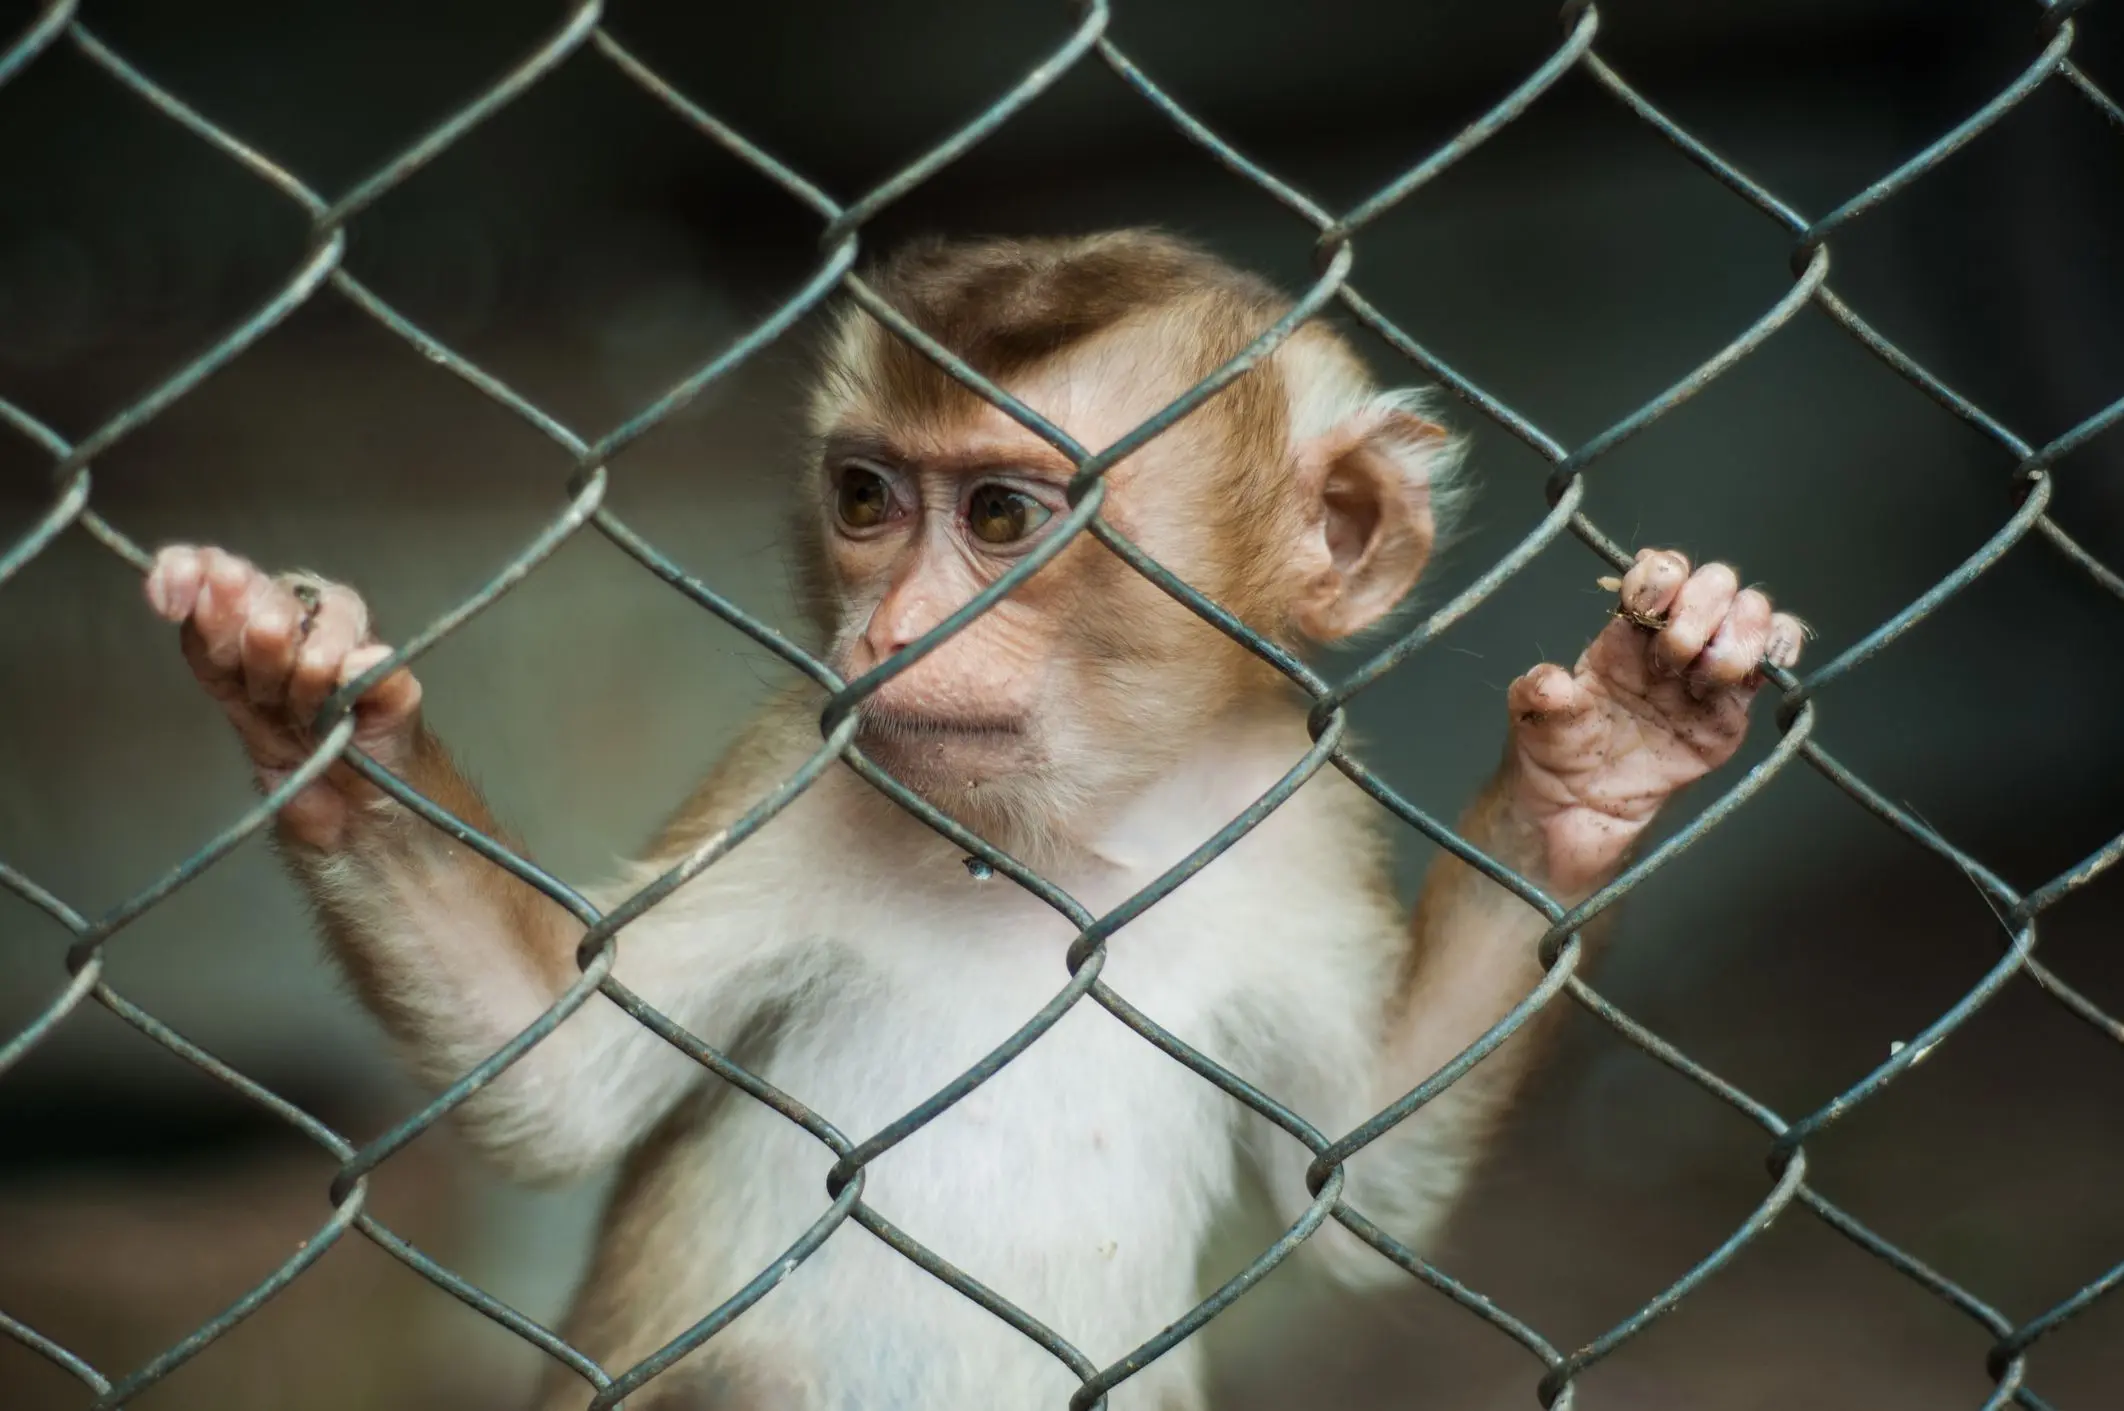 el mono inteligente - Son los monos amigables con los humanos